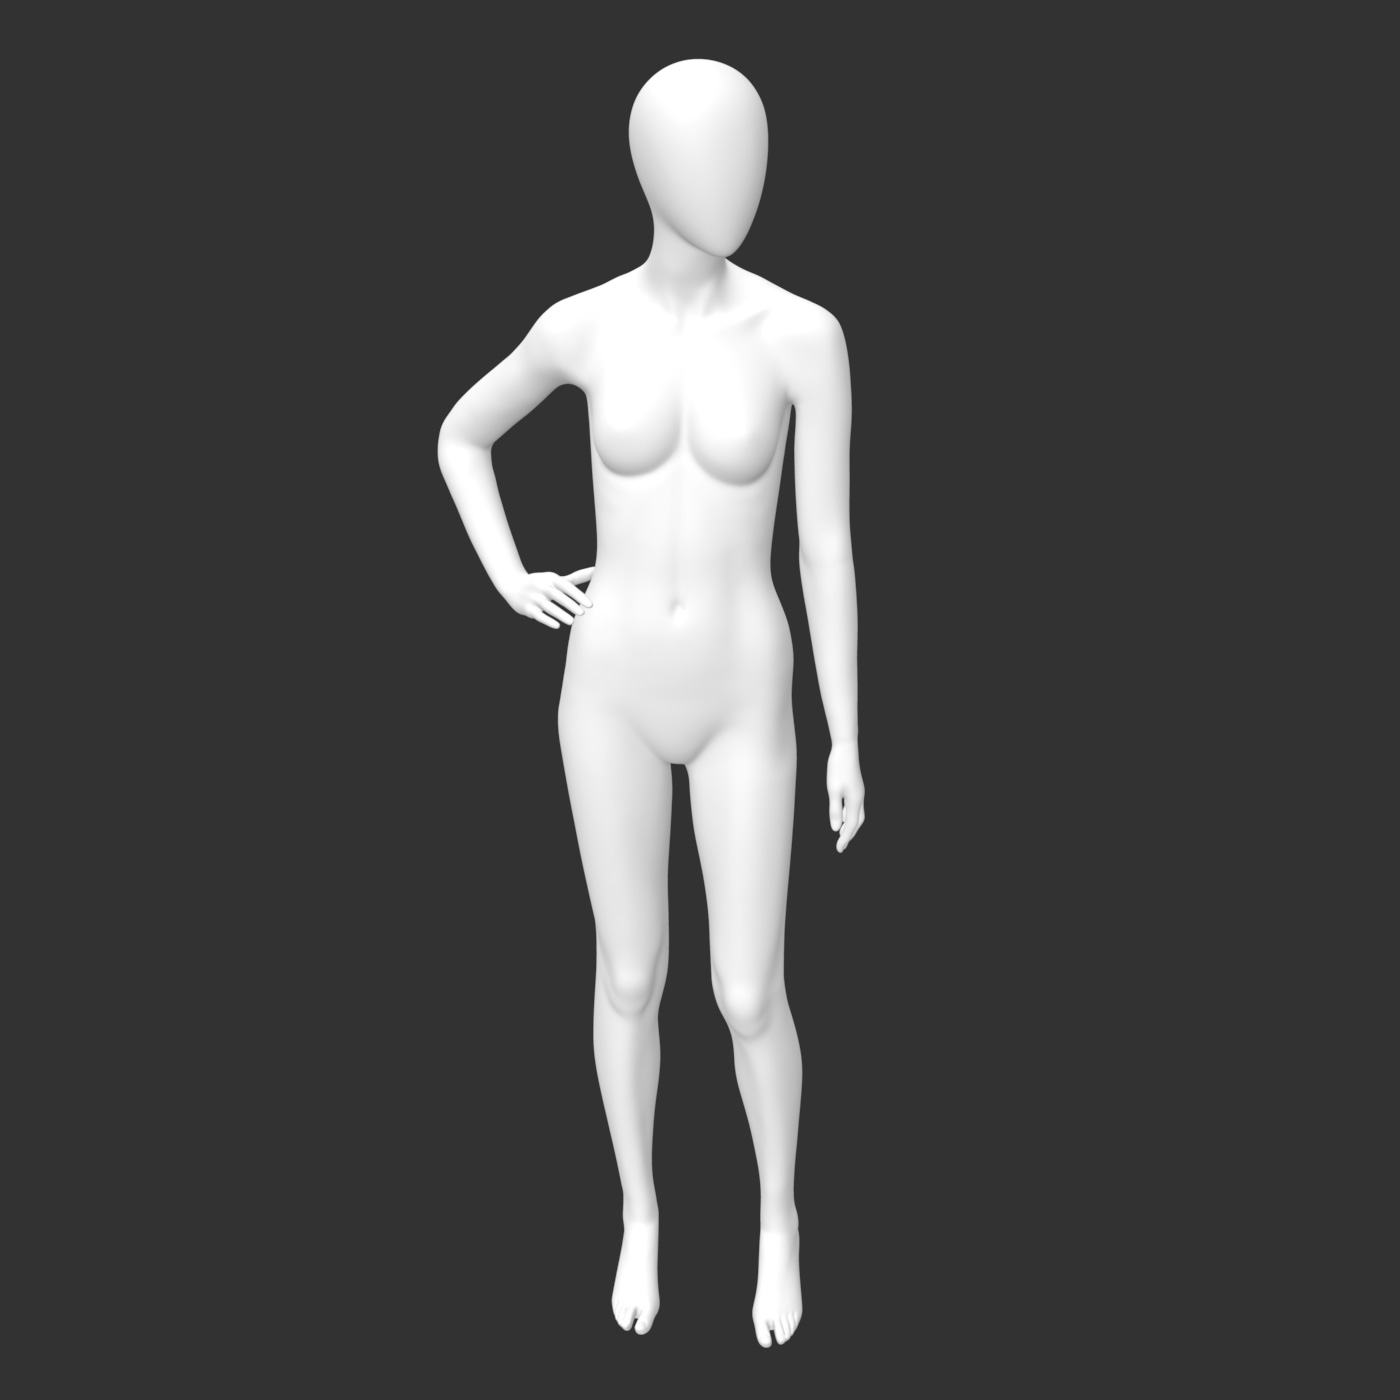 Manechin feminin în picioare cu model de imprimare 3d akimbo